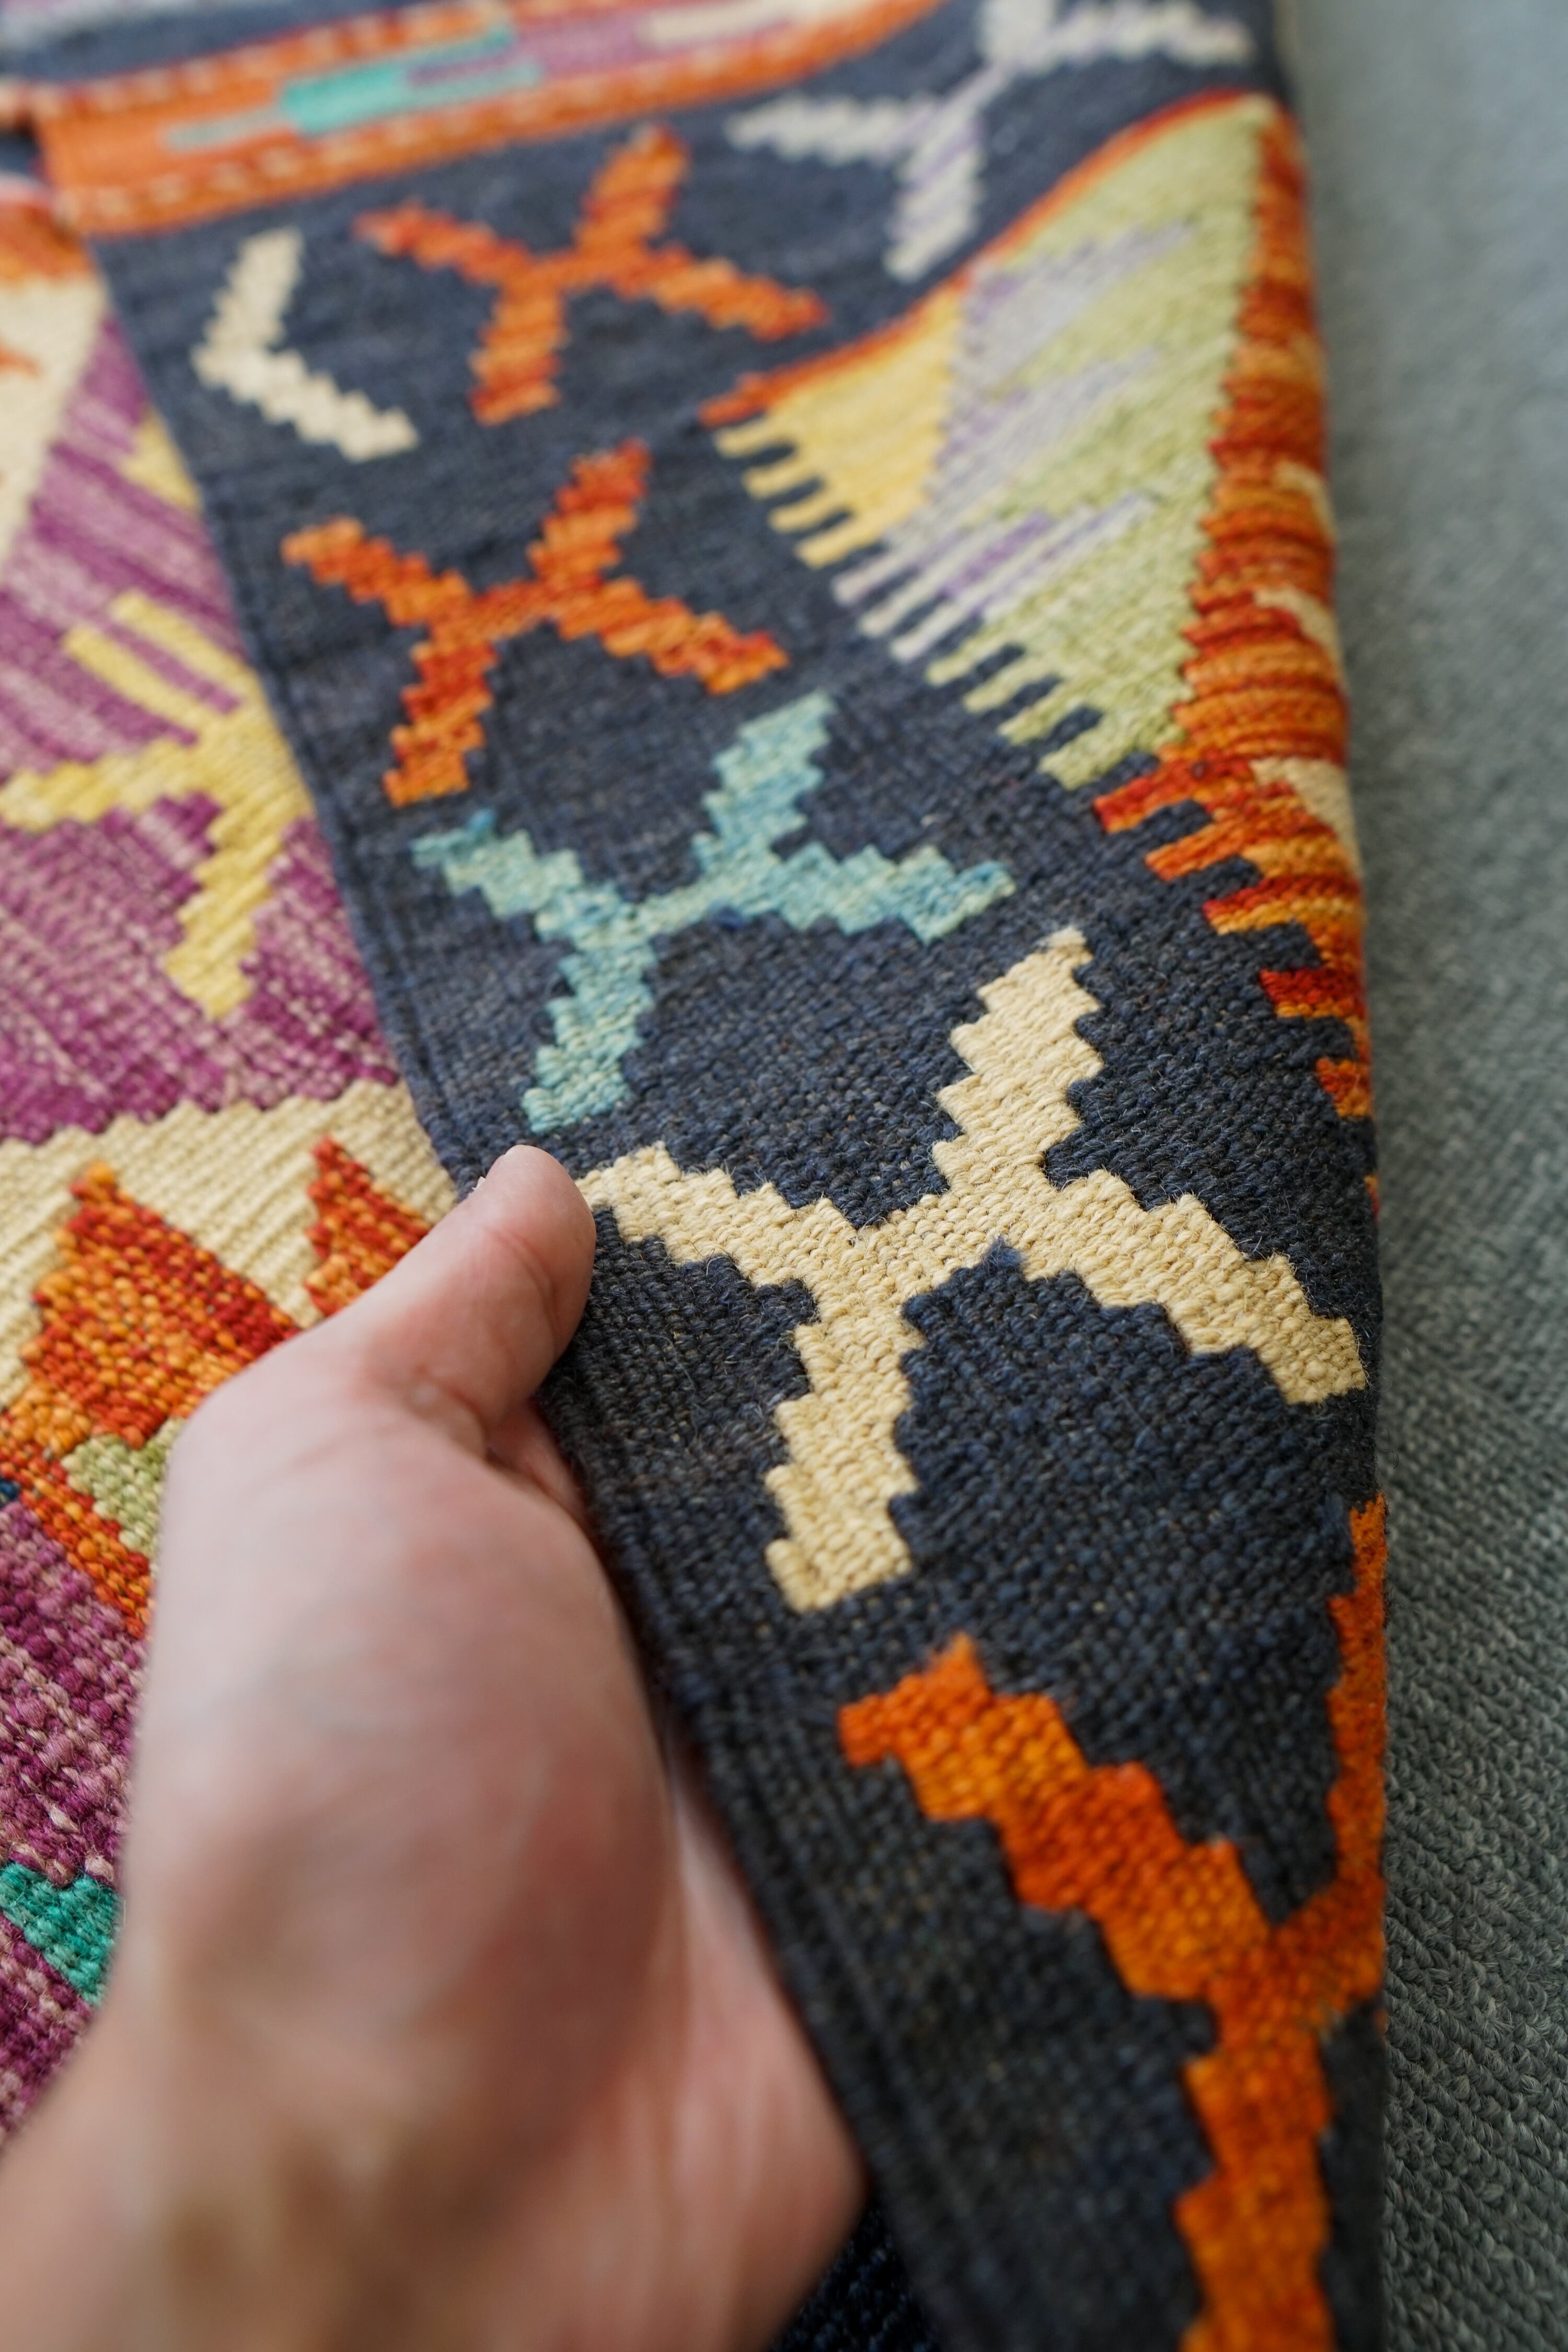 217×67cm【アフガン手織りキリム ランナー】廊下敷き 手織り絨毯